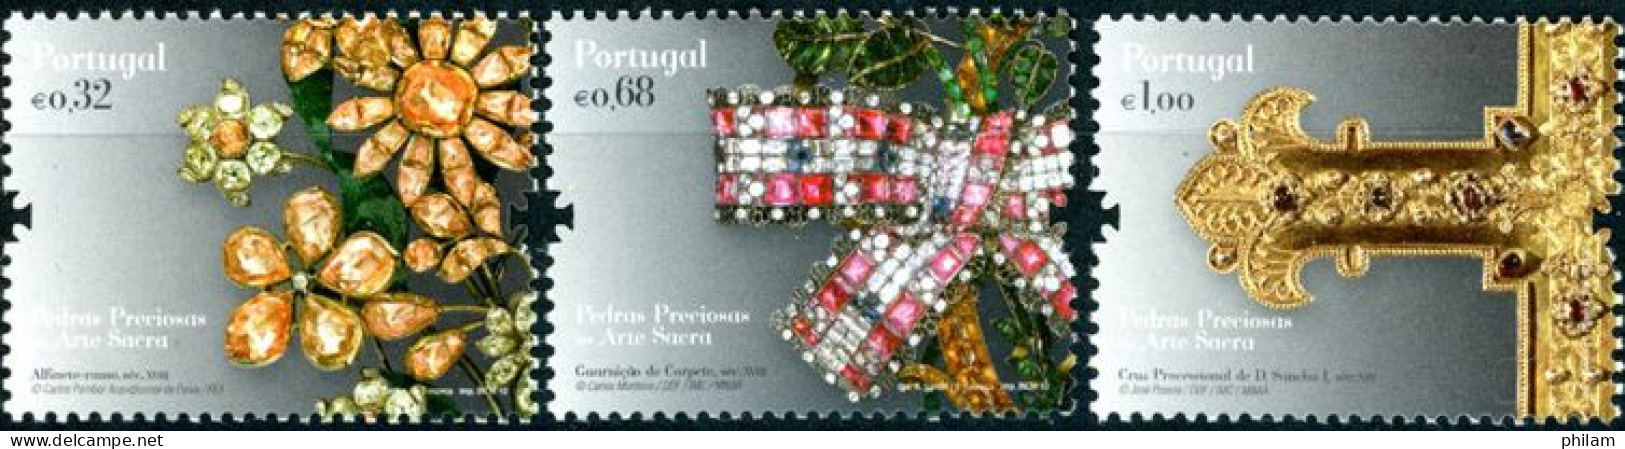 PORTUGAL 2010 - Pierres Précieuses Dans L'art Sacré - 3 V. - Unused Stamps